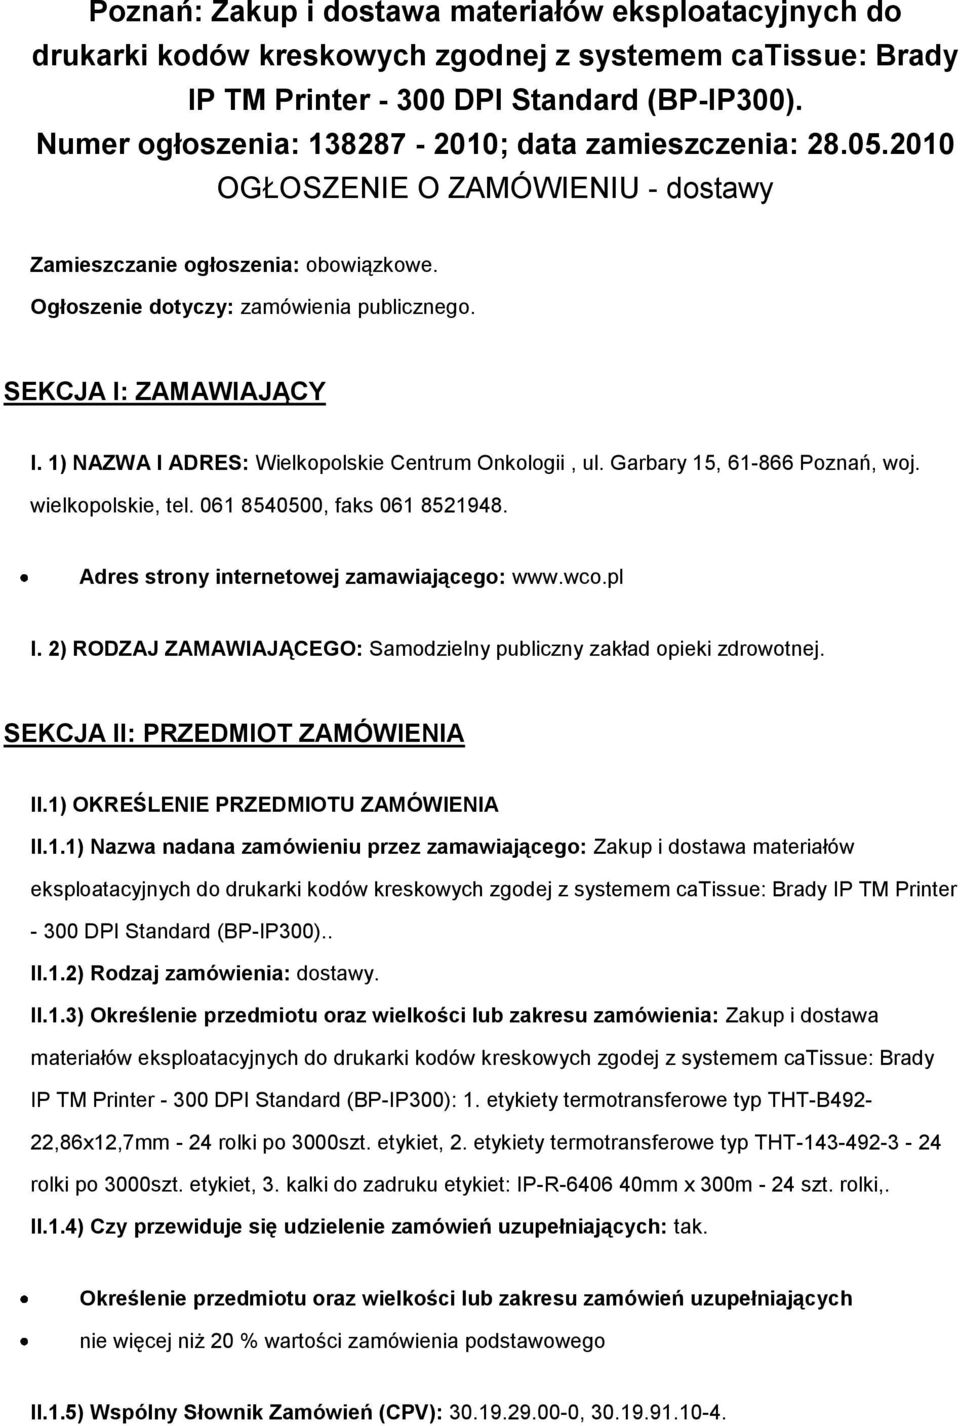 SEKCJA I: ZAMAWIAJĄCY I. 1) NAZWA I ADRES: Wielkopolskie Centrum Onkologii, ul. Garbary 15, 61-866 Poznań, woj. wielkopolskie, tel. 061 8540500, faks 061 8521948.